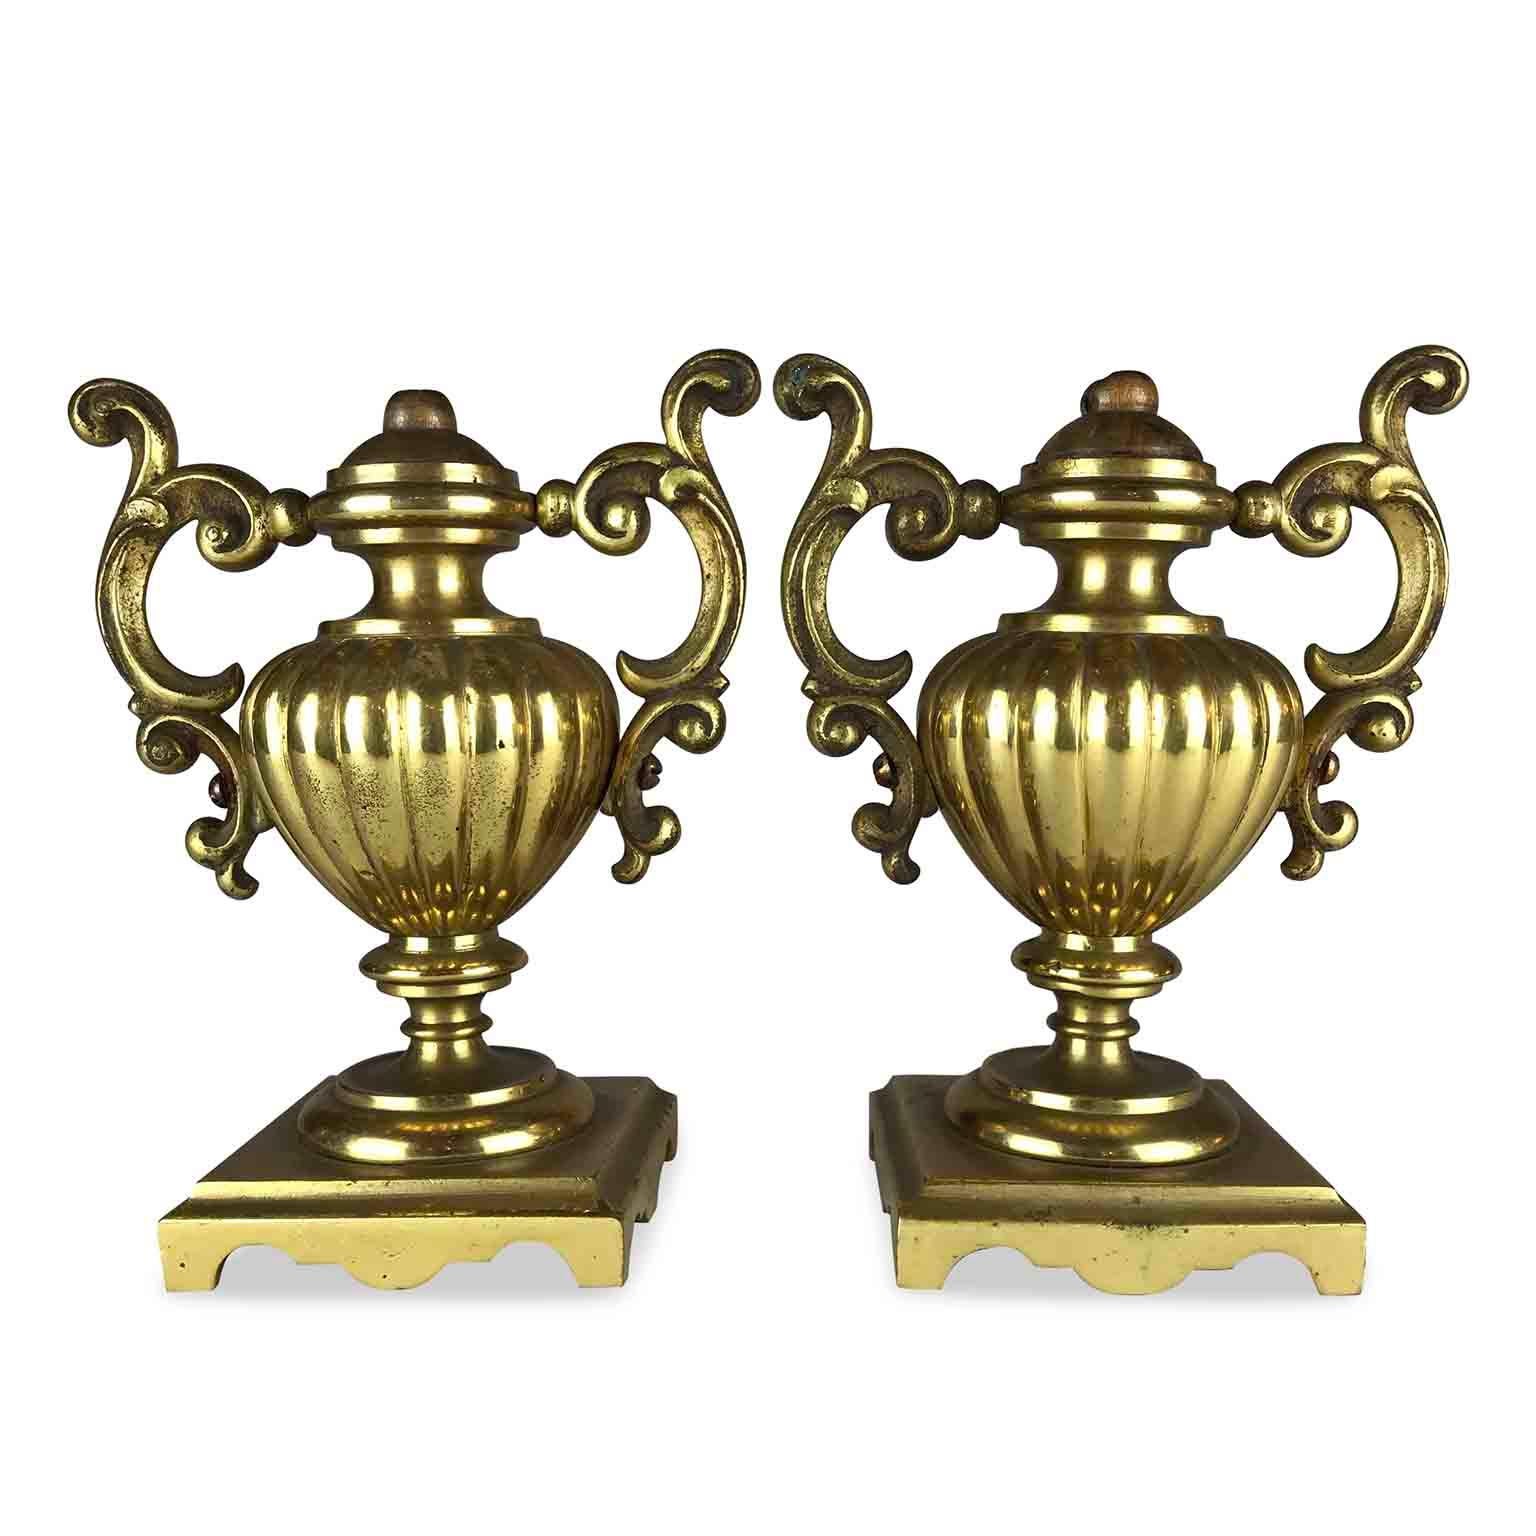 Paar vergoldete Bronzeurnen aus Italien, 19. Jahrhundert. Ein Paar Vasen in Form einer Amphora aus quecksilbervergoldeter und polierter Bronze. Sehr kleine Vasen mit kanneliertem Korpus und zwei doppelten Henkeln. Diese antiken Portapalme aus